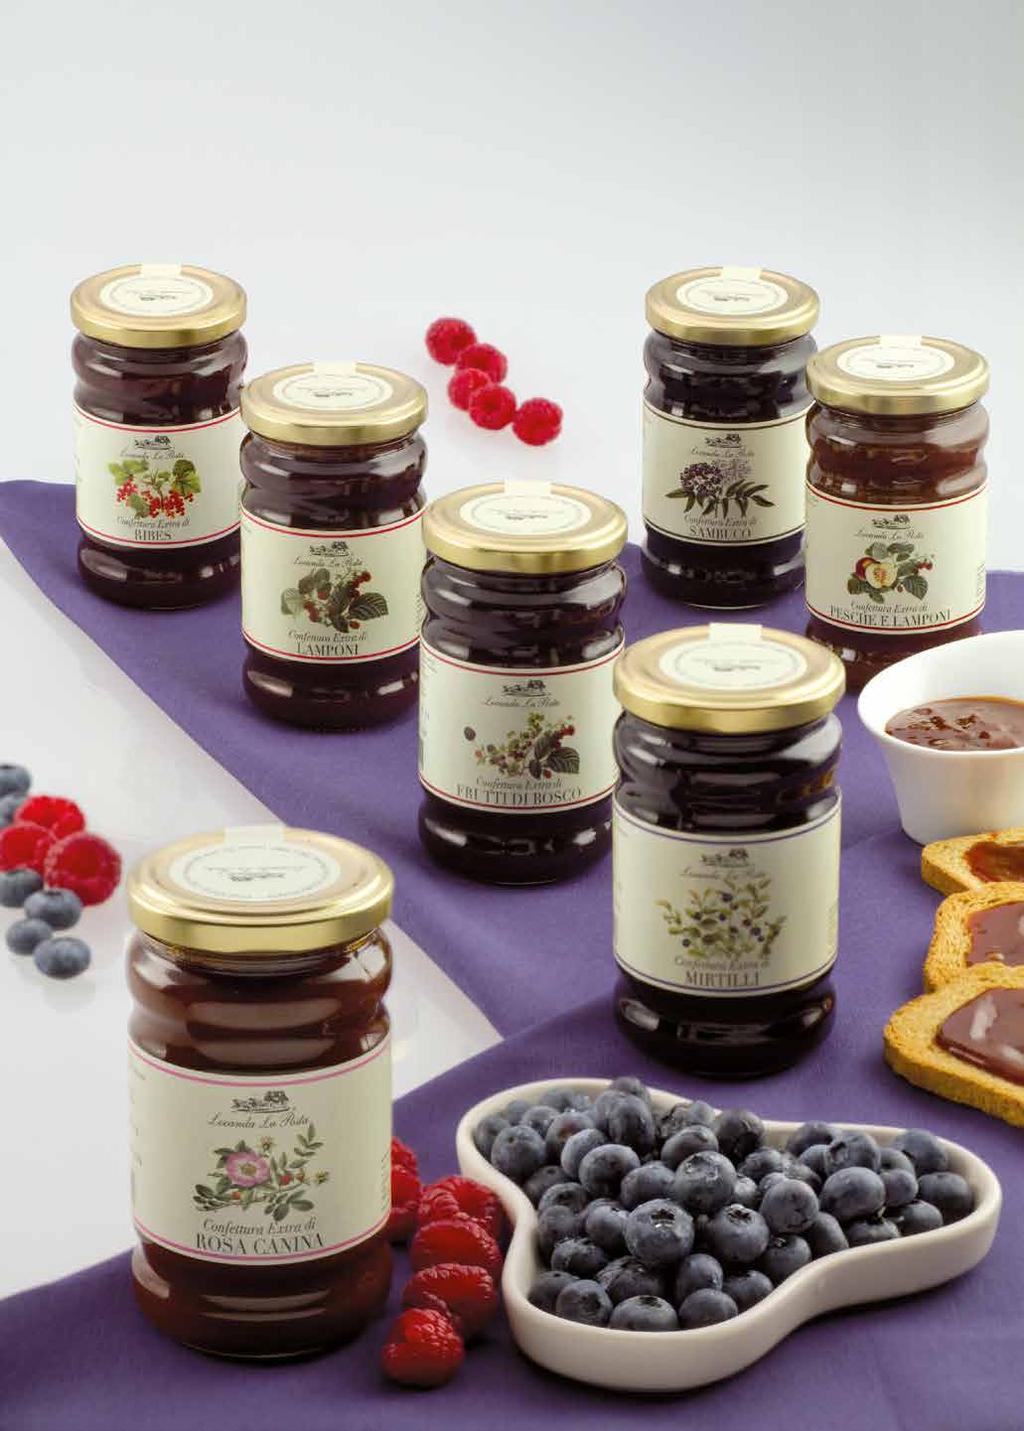 Extra jams wild berries 05150 Wild berry extra jam 05155 Raspberry extra jam 05160 Blueberry extra jam 05161 Blueberry and currants extra jam 05165